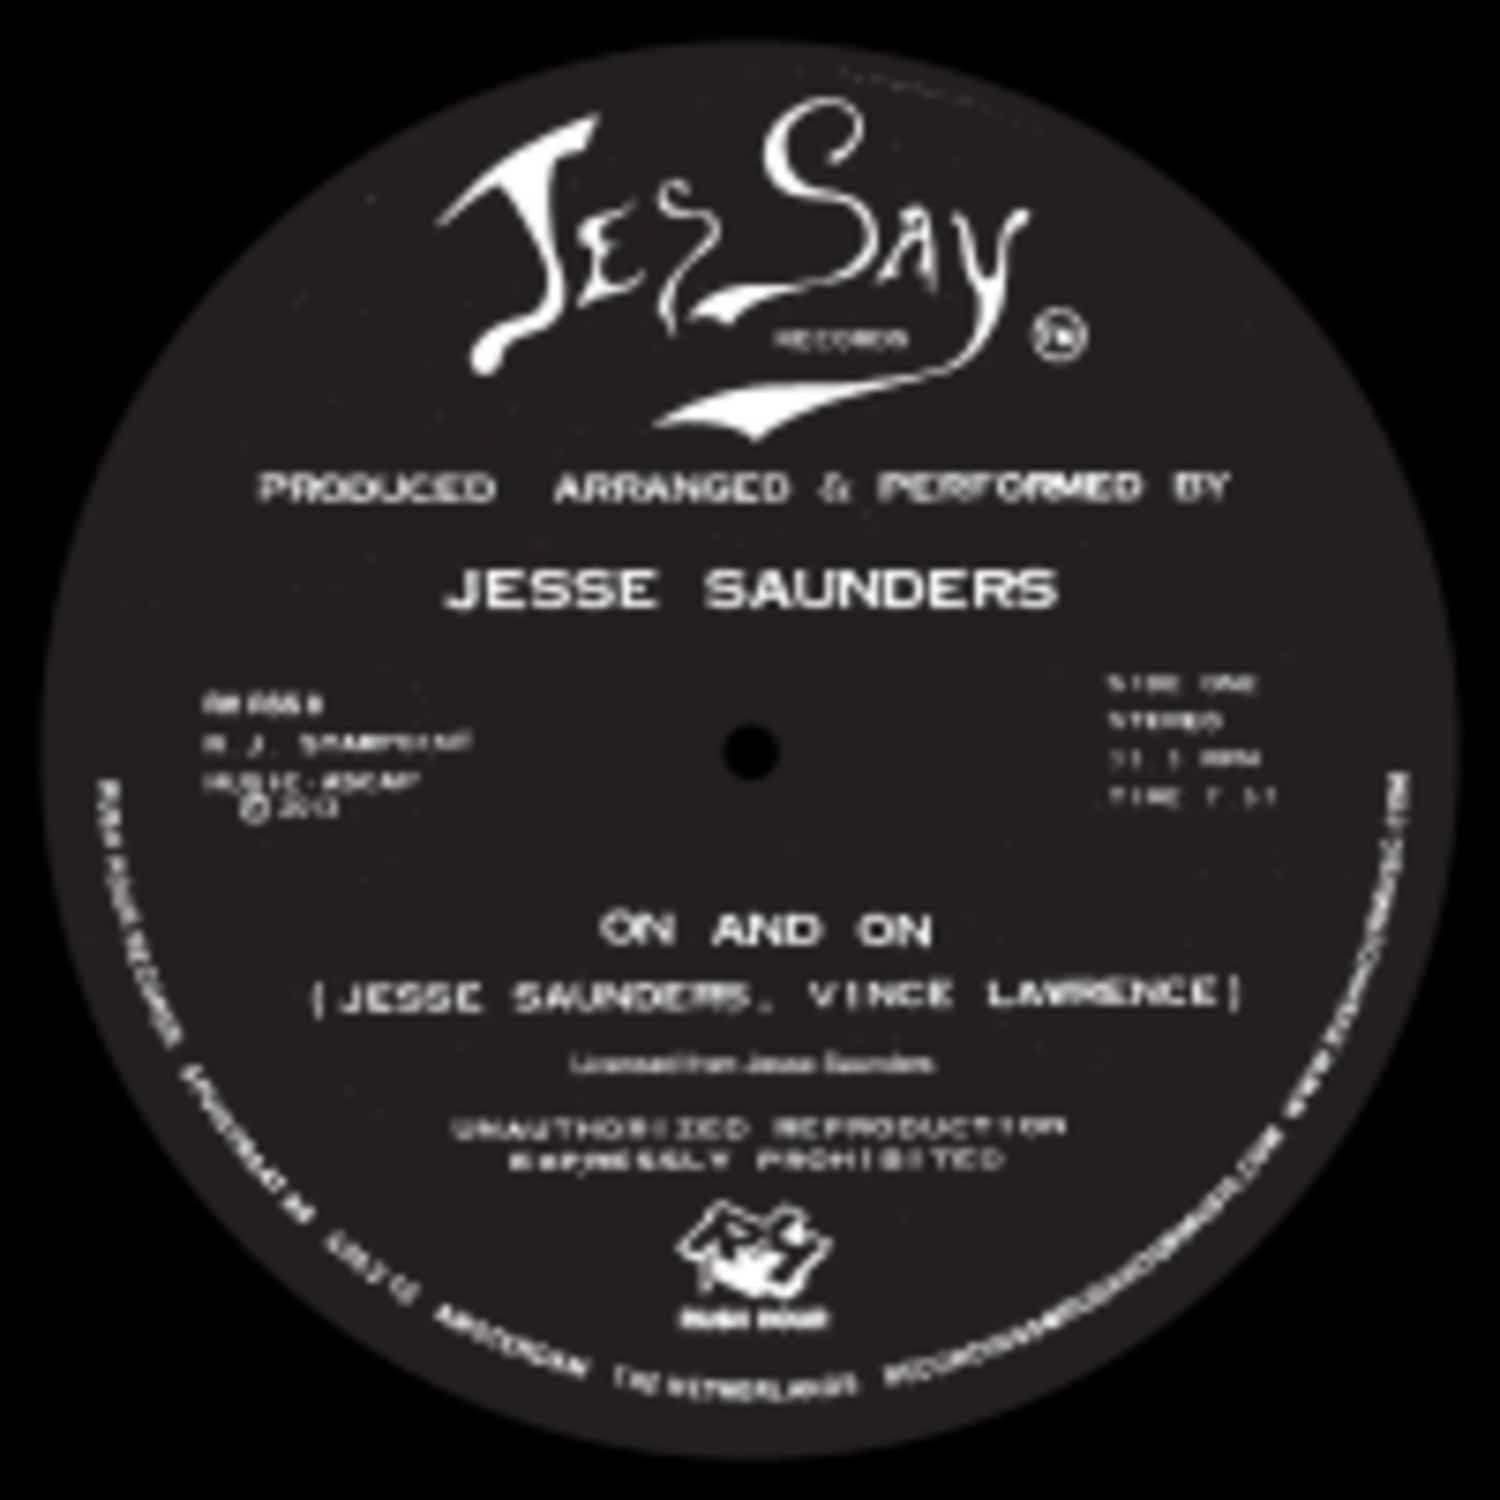 Jesse Saunders - ON & ON